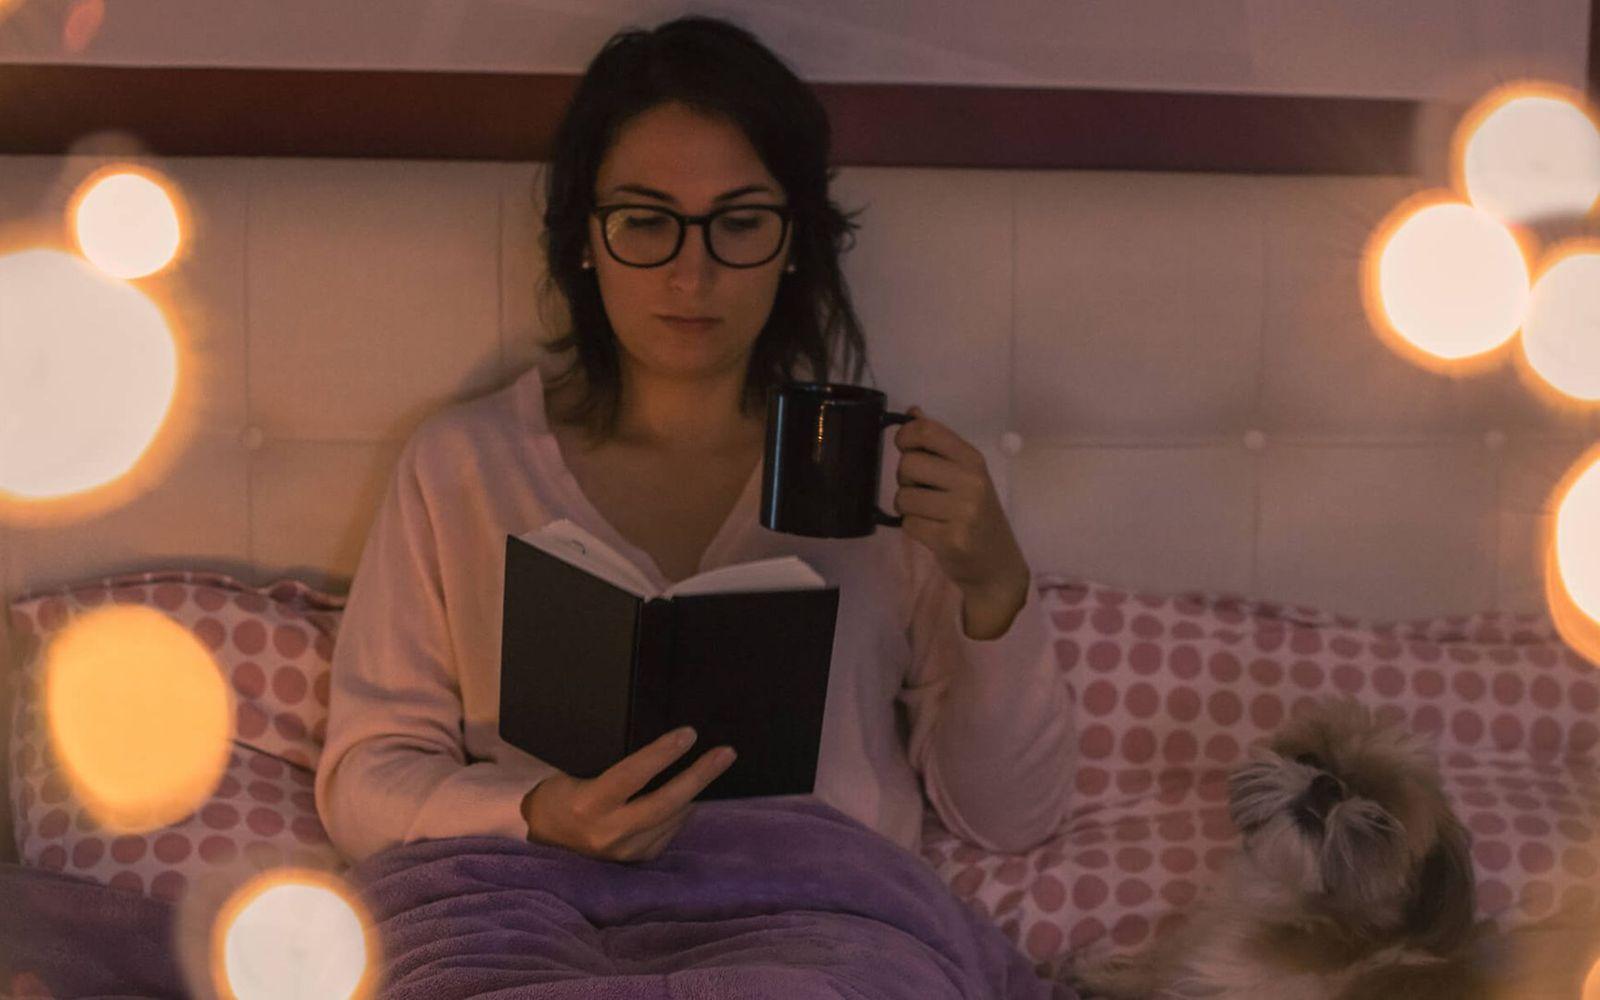 Erholsamer Schlaf: Frau sitzt am Abend auf dem Bett und liest.